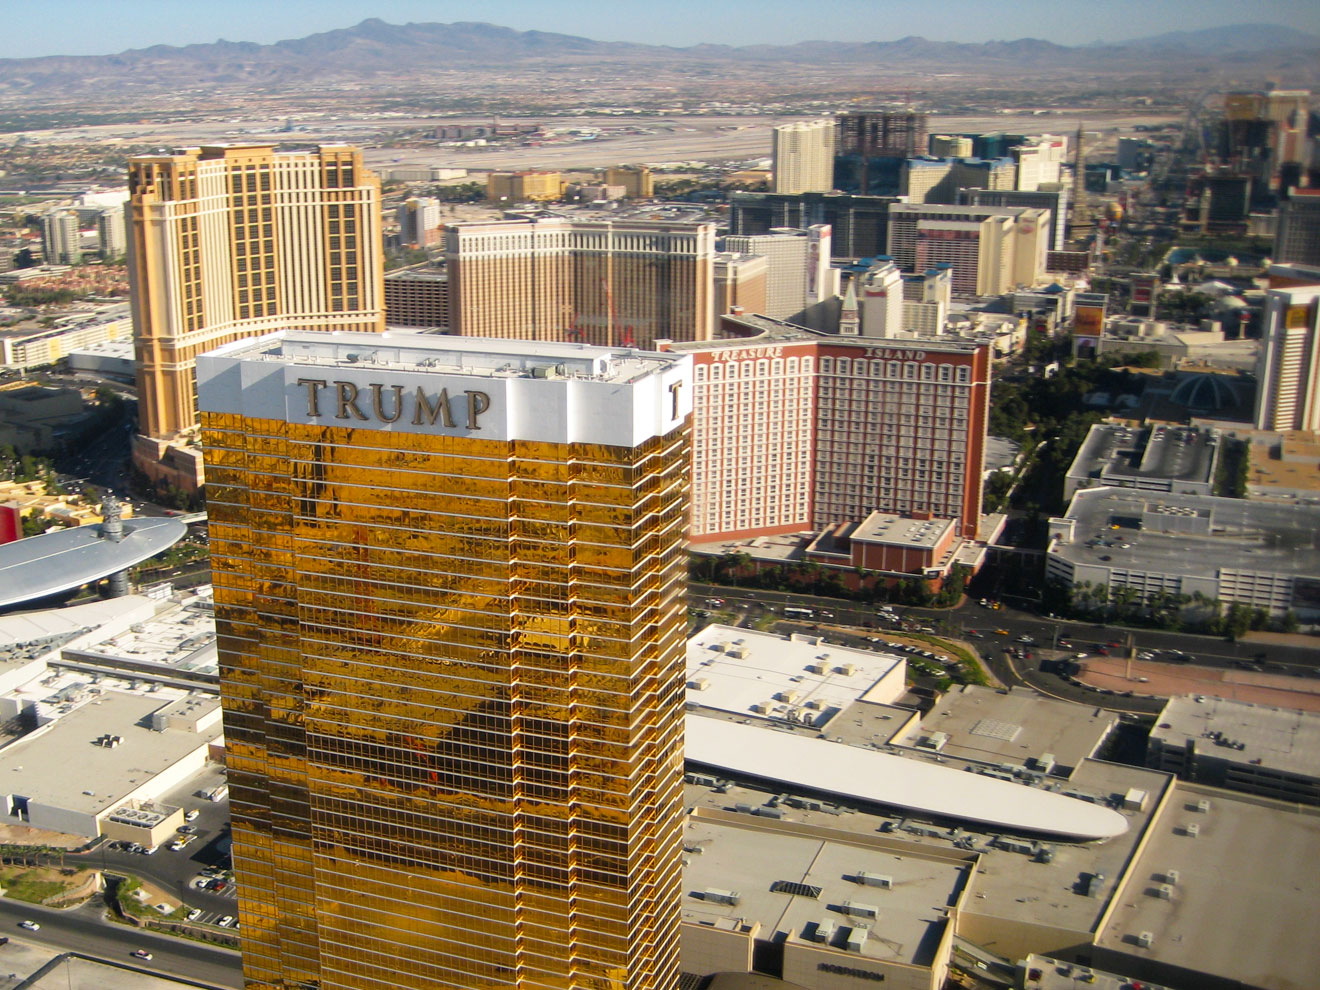 Đây là Trump International Hotel & Tower ở Las Vegas, một trong chín khách sạn của Trump trên thế giới. Ảnh: TL